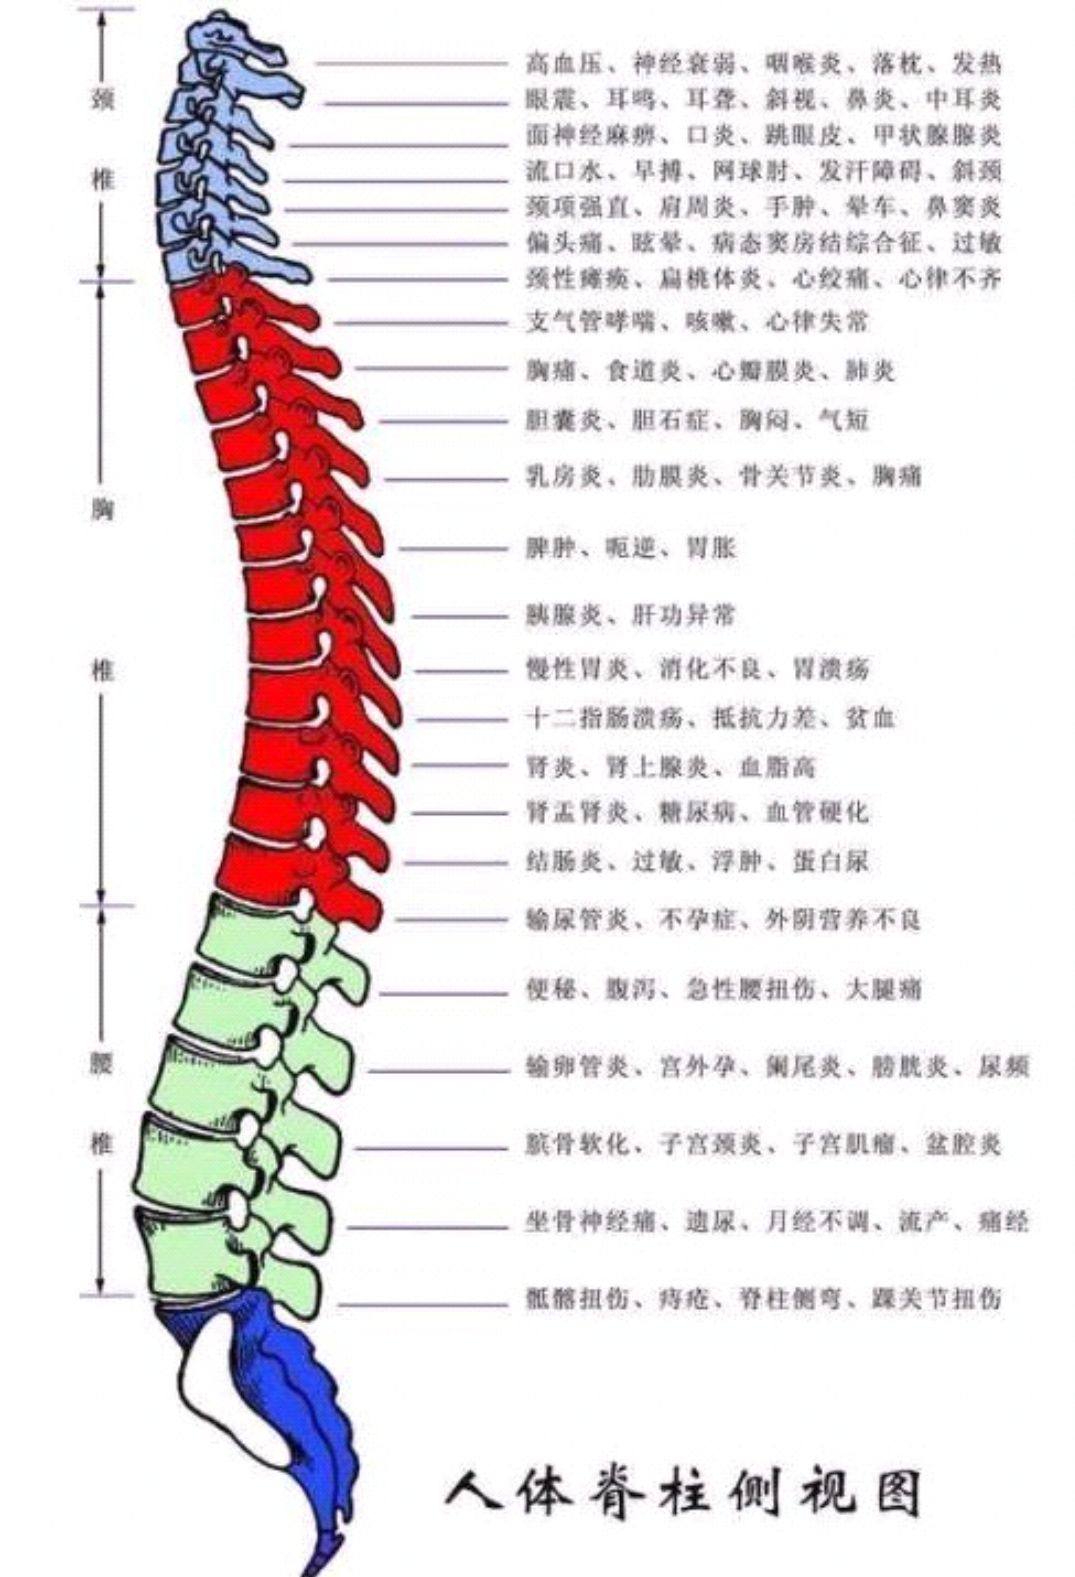 脊柱正常形态图片